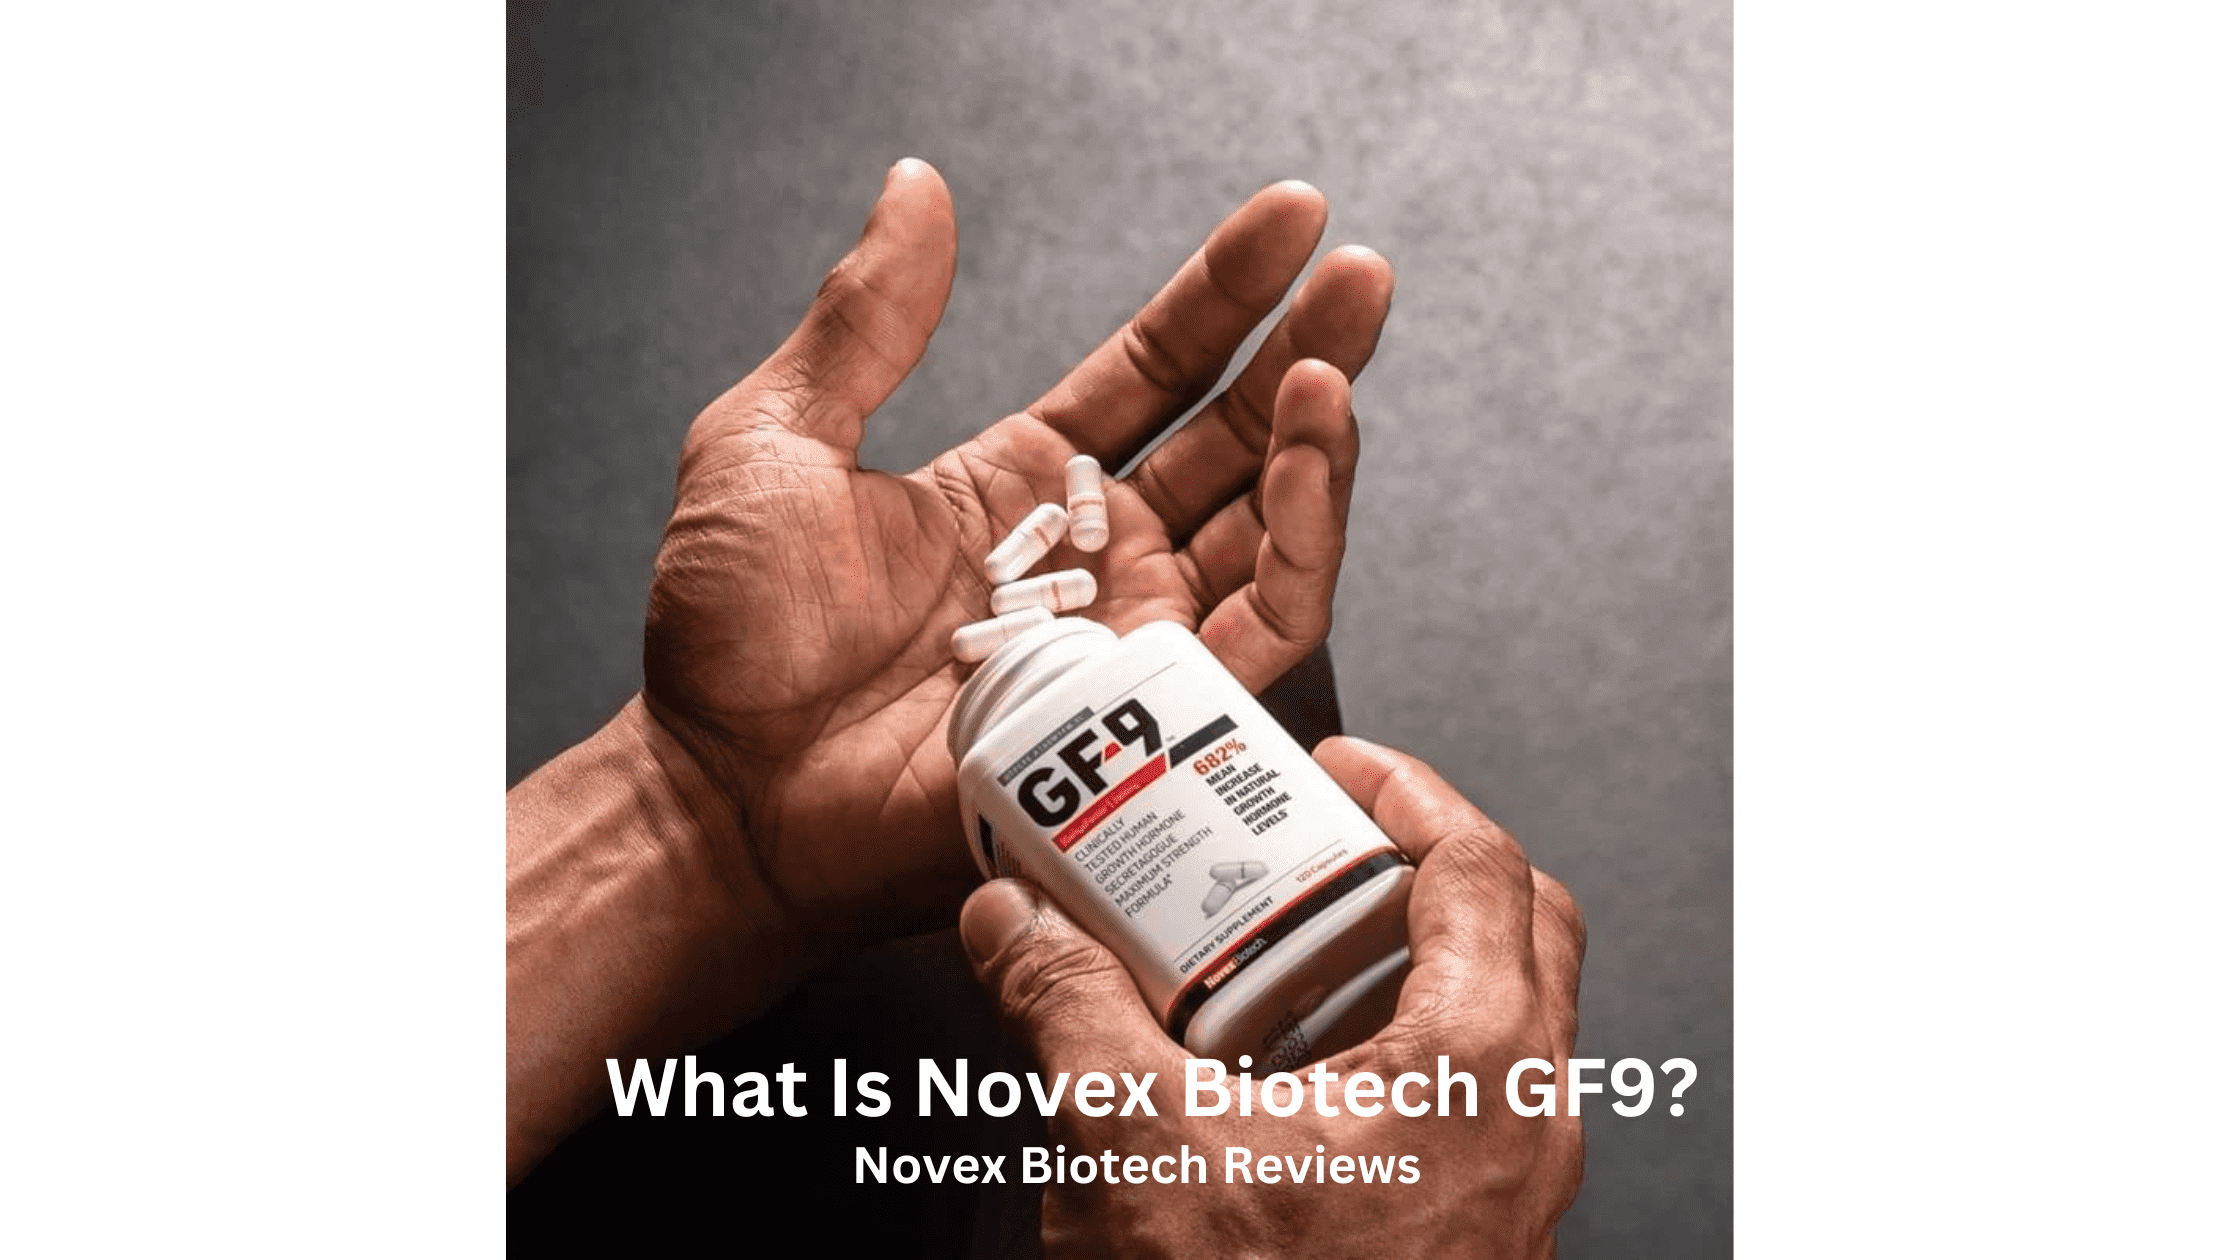 What Is Novex Biotech GF9? Here Is Novex Biotech Reviews